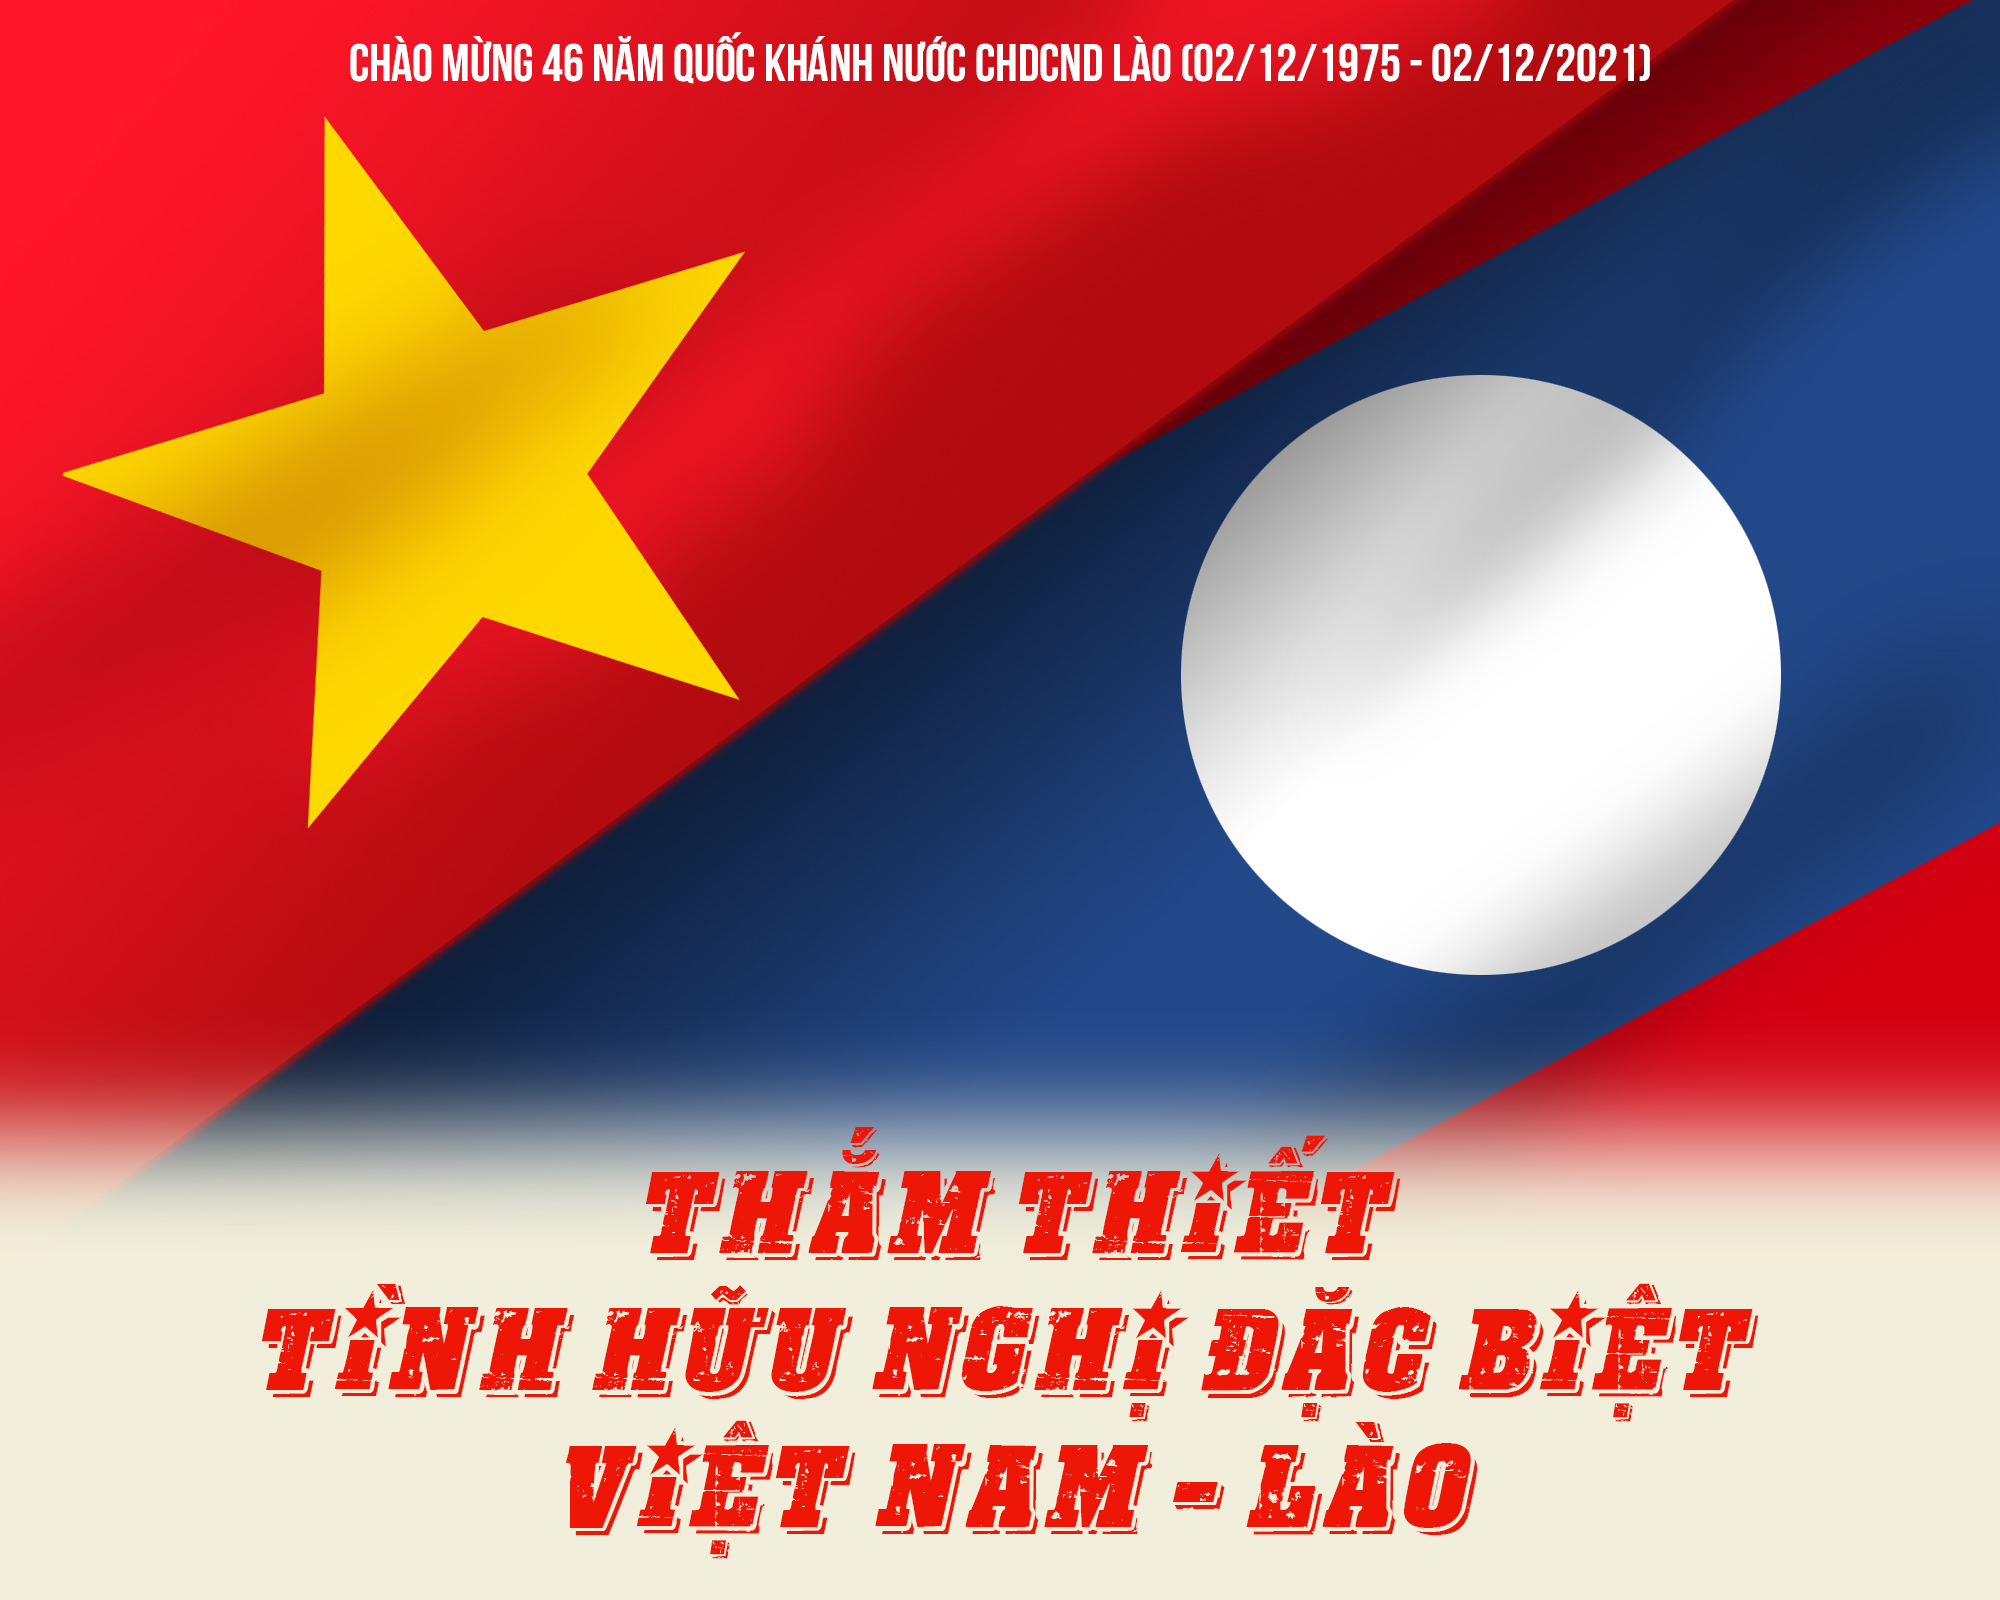 Tình hữu nghị Việt Nam - Lào: Đến năm 2024, tình hữu nghị giữa Việt Nam và Lào đã được củng cố một cách vững chắc hơn bao giờ hết. Người dân hai quốc gia có thể dễ dàng di chuyển qua lại, trao đổi văn hóa và kinh tế. Hình ảnh về tình hữu nghị Việt Nam - Lào hiện lên như một niềm tự hào và khát khao củng cố thêm mối quan hệ đáng quý này.